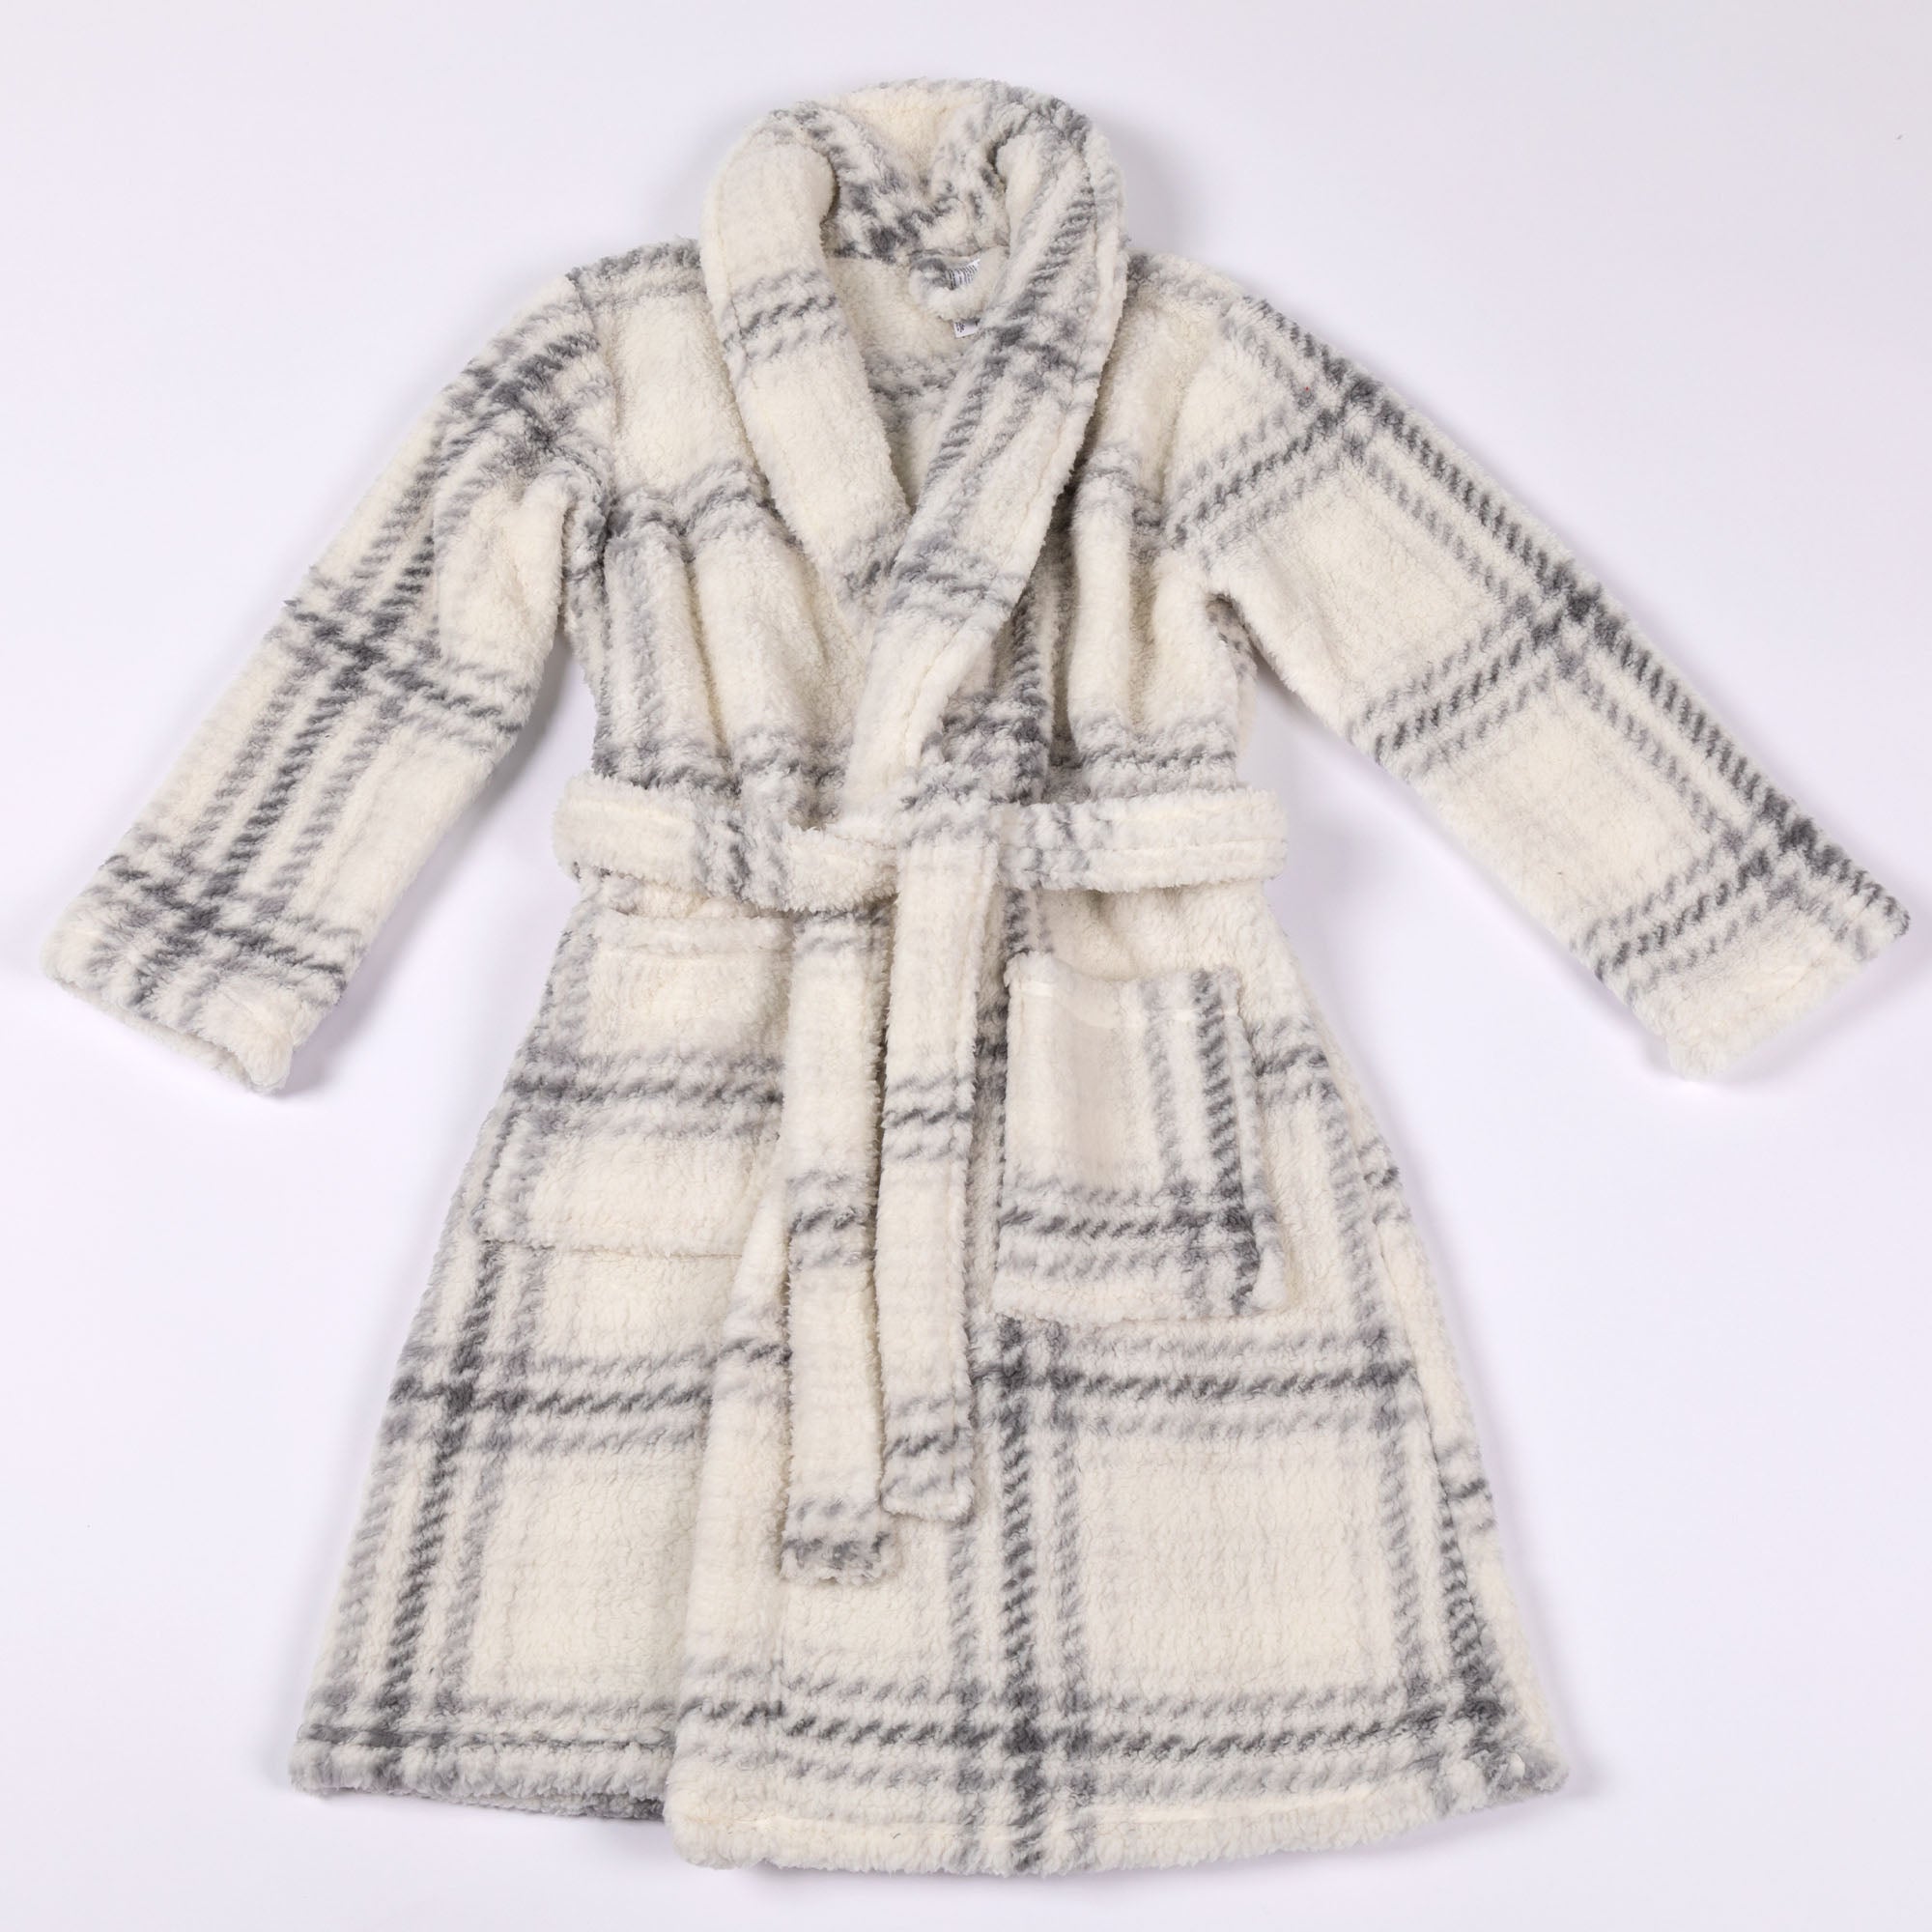 Cozy Soft Plaid Sherpa Fleece Bathrobe - Gray Plaid 